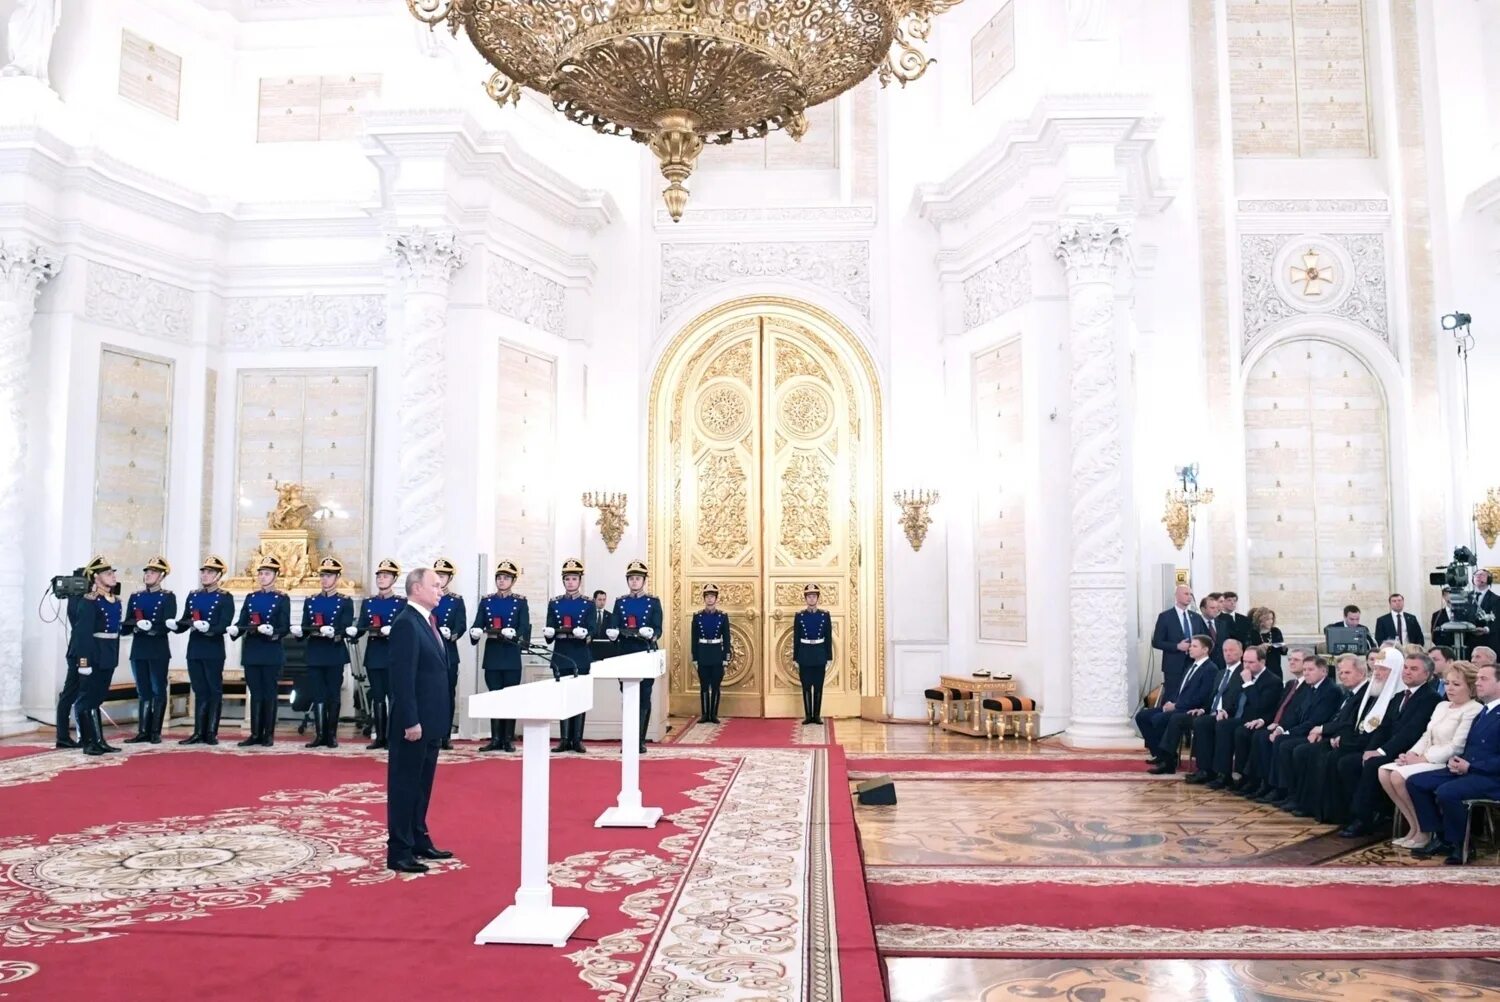 Зал награждения в Кремле. Кабинет президента в Кремле. Торжественный прием в Кремле выпускников военных. Вручение госпремий.